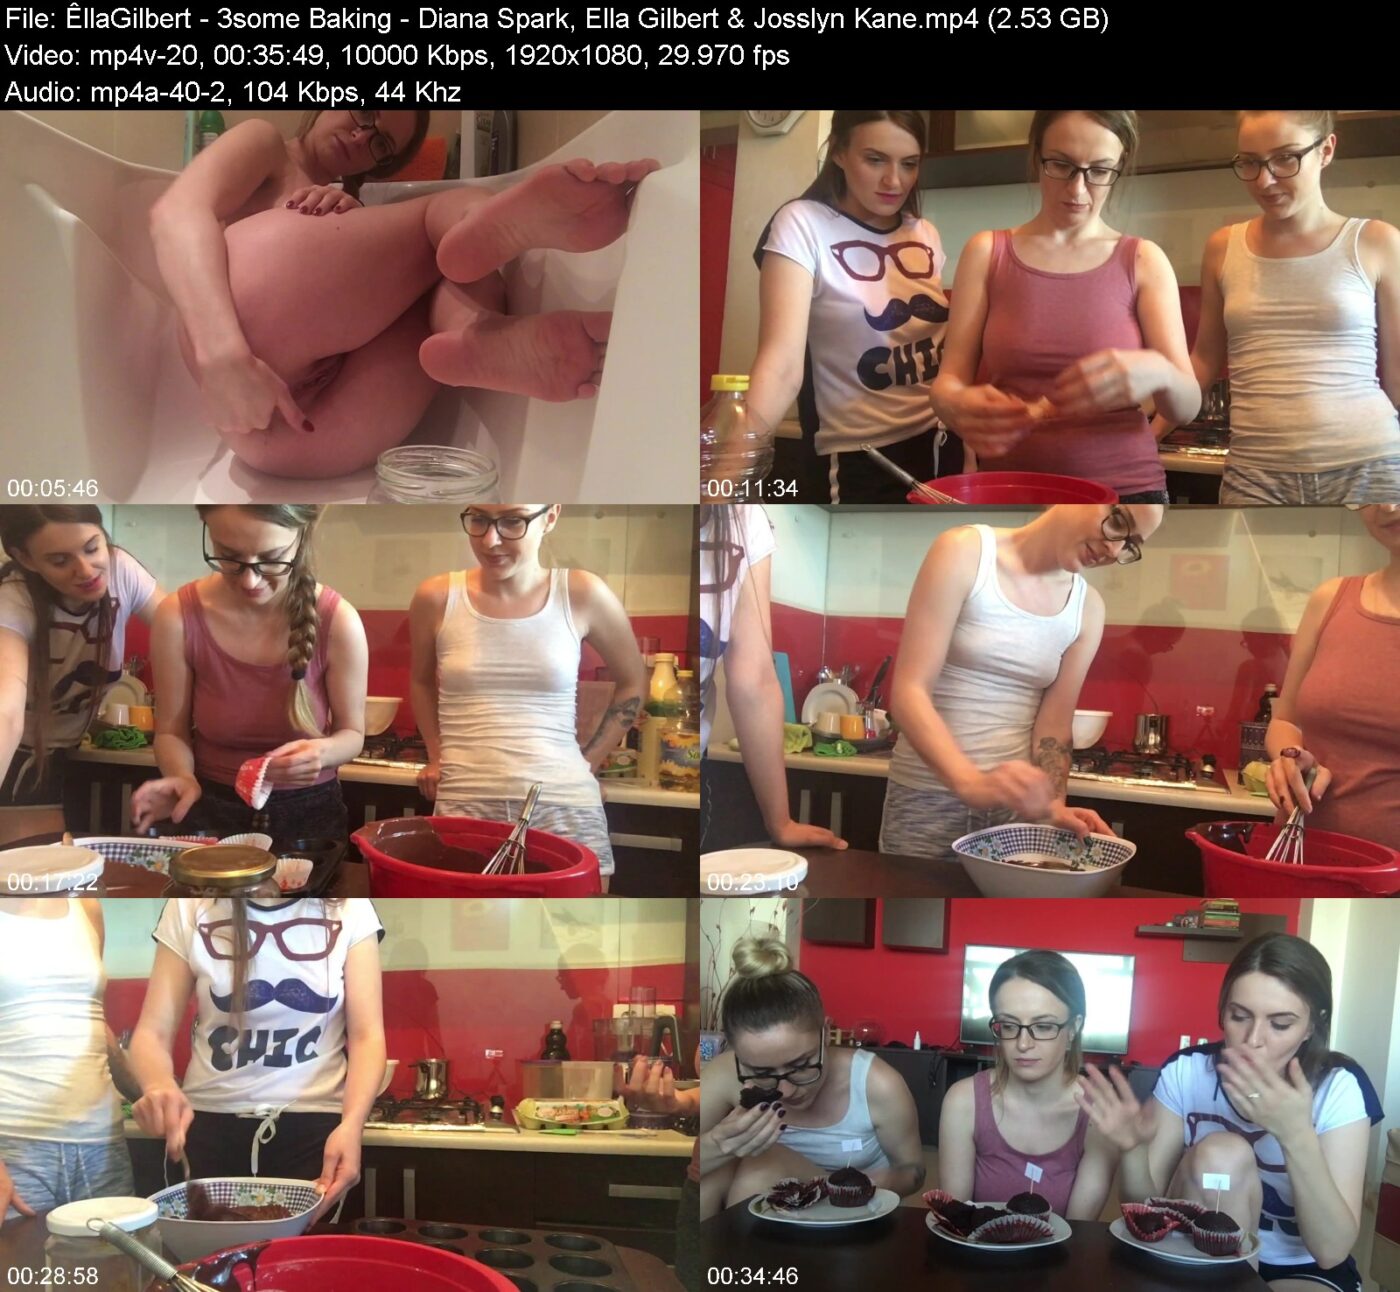 ÊllaGilbert in 3some Baking in Diana Spark, Ella Gilbert & Josslyn Kane